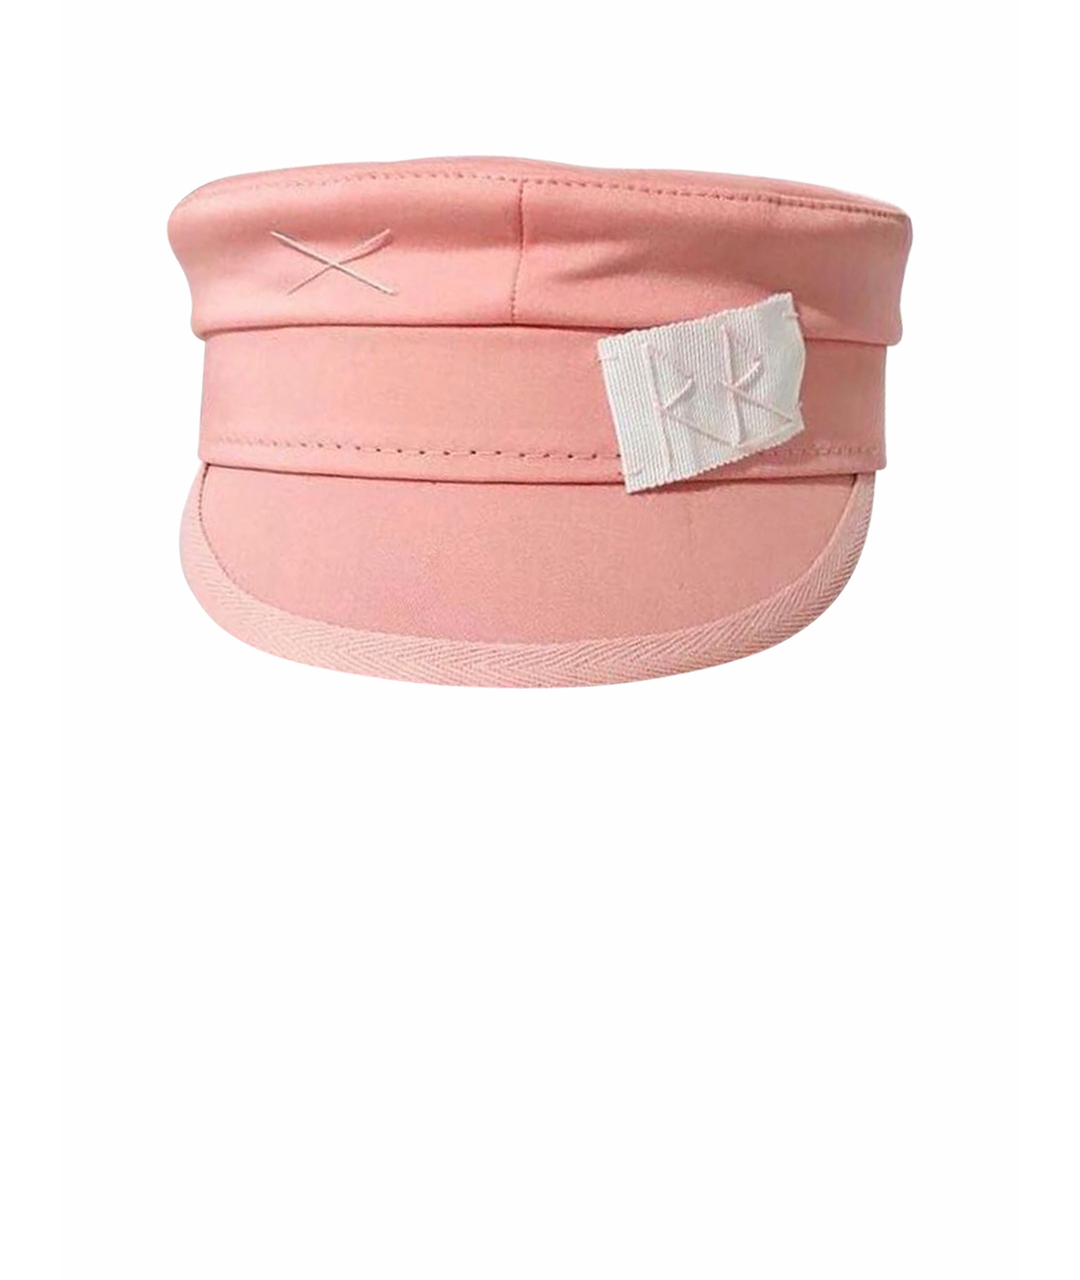 RUSLAN BAGINSKIY Розовая хлопковая кепка, фото 1